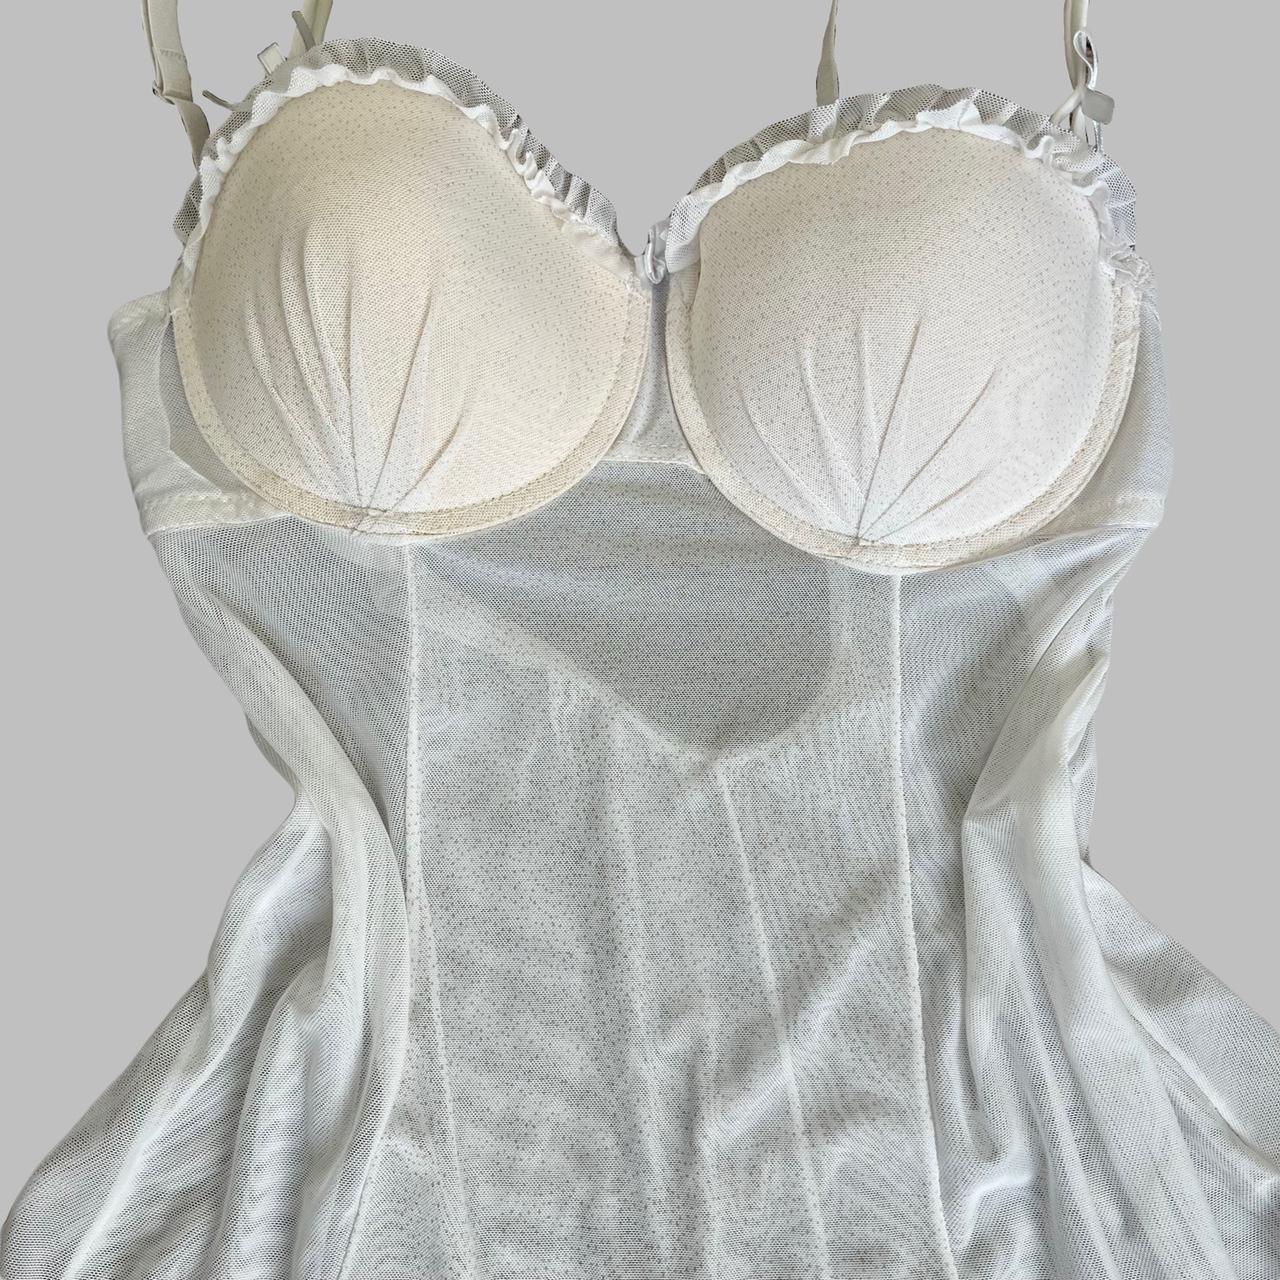 Soft white lingerie dress Early 2000s lingerie... - Depop